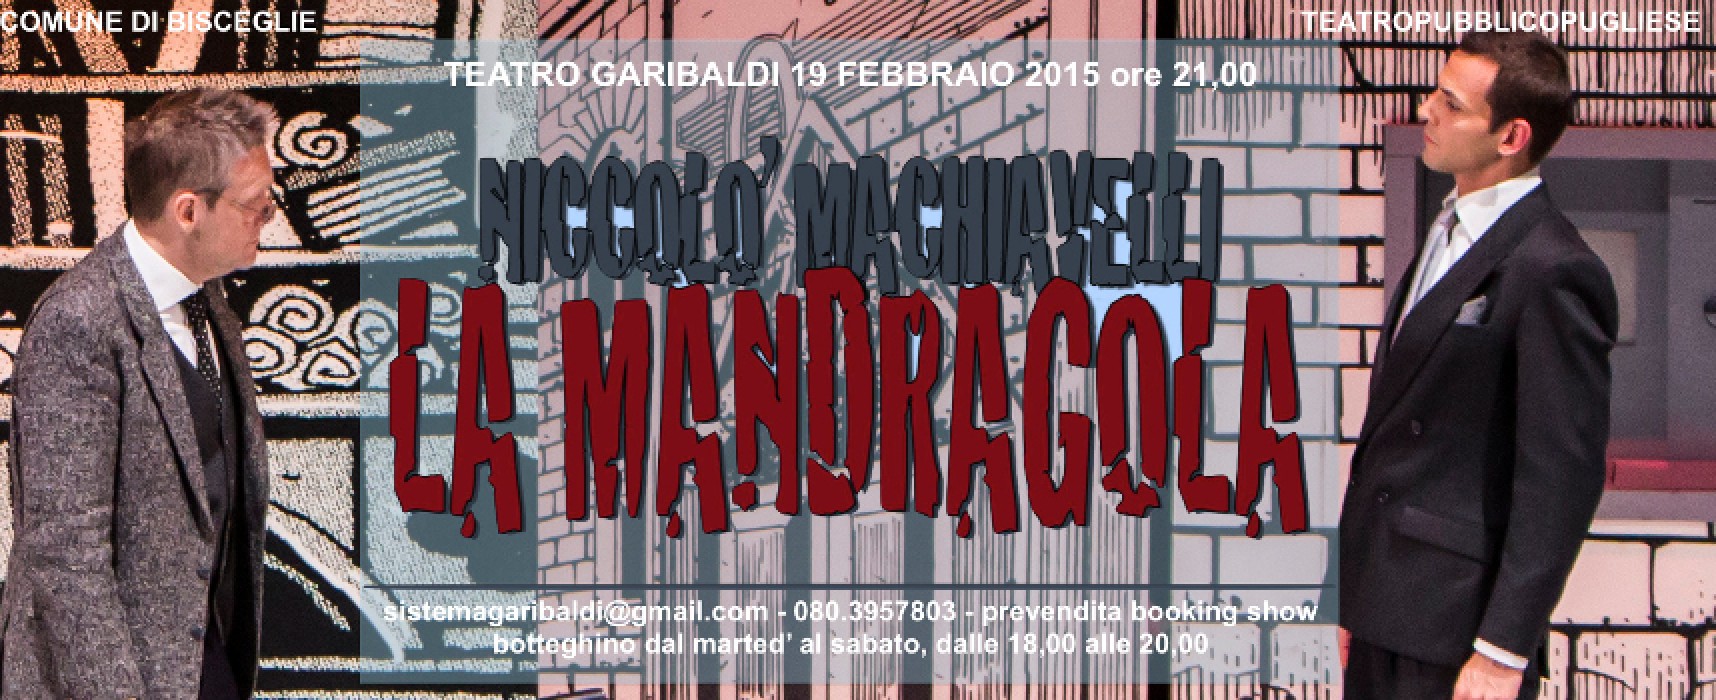 La stagione teatrale del “Garibaldi” prosegue con “La Mandragola”